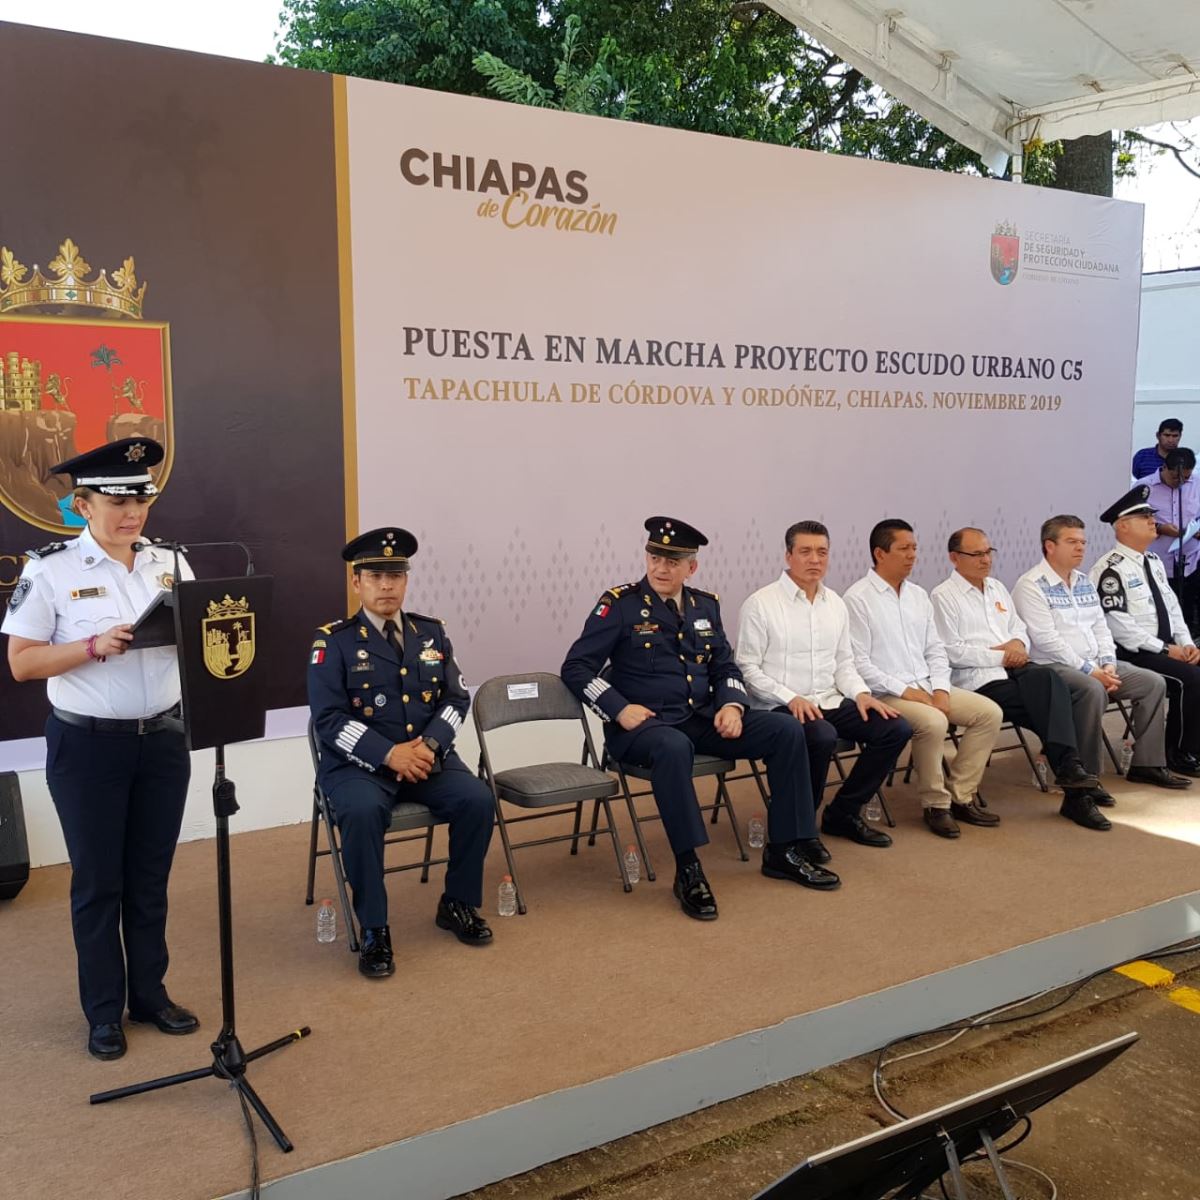 Más y mejor seguridad para Chiapas con Escudo Urbano C5